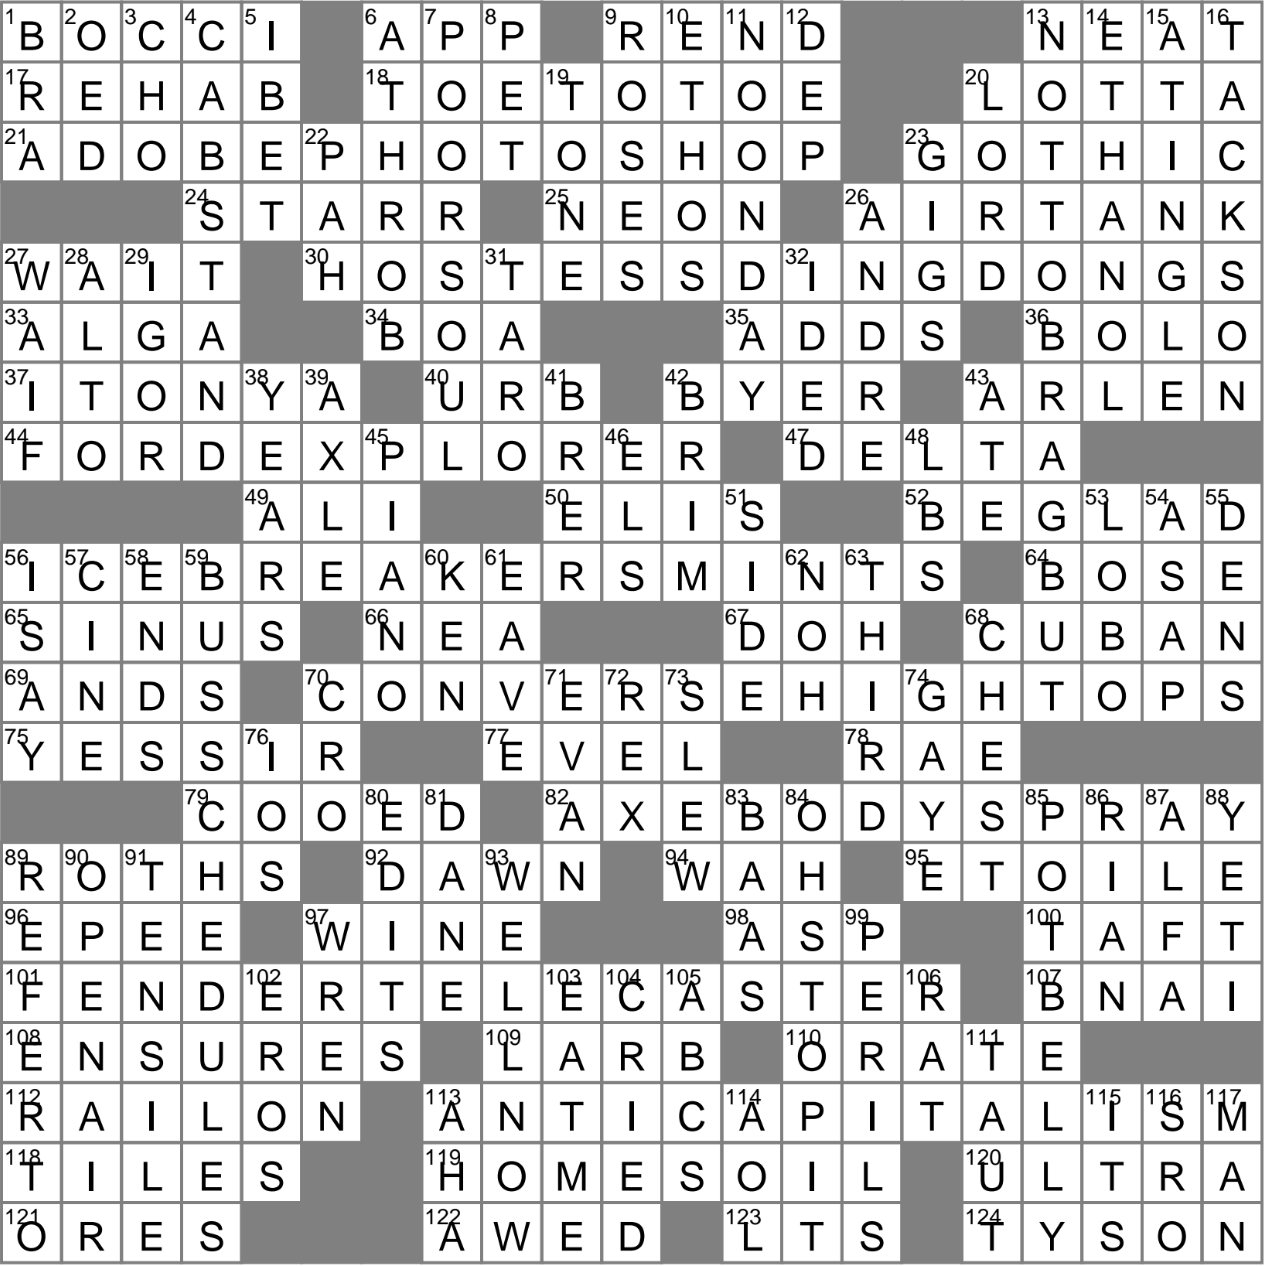 Plans to go public? crossword clue Archives 